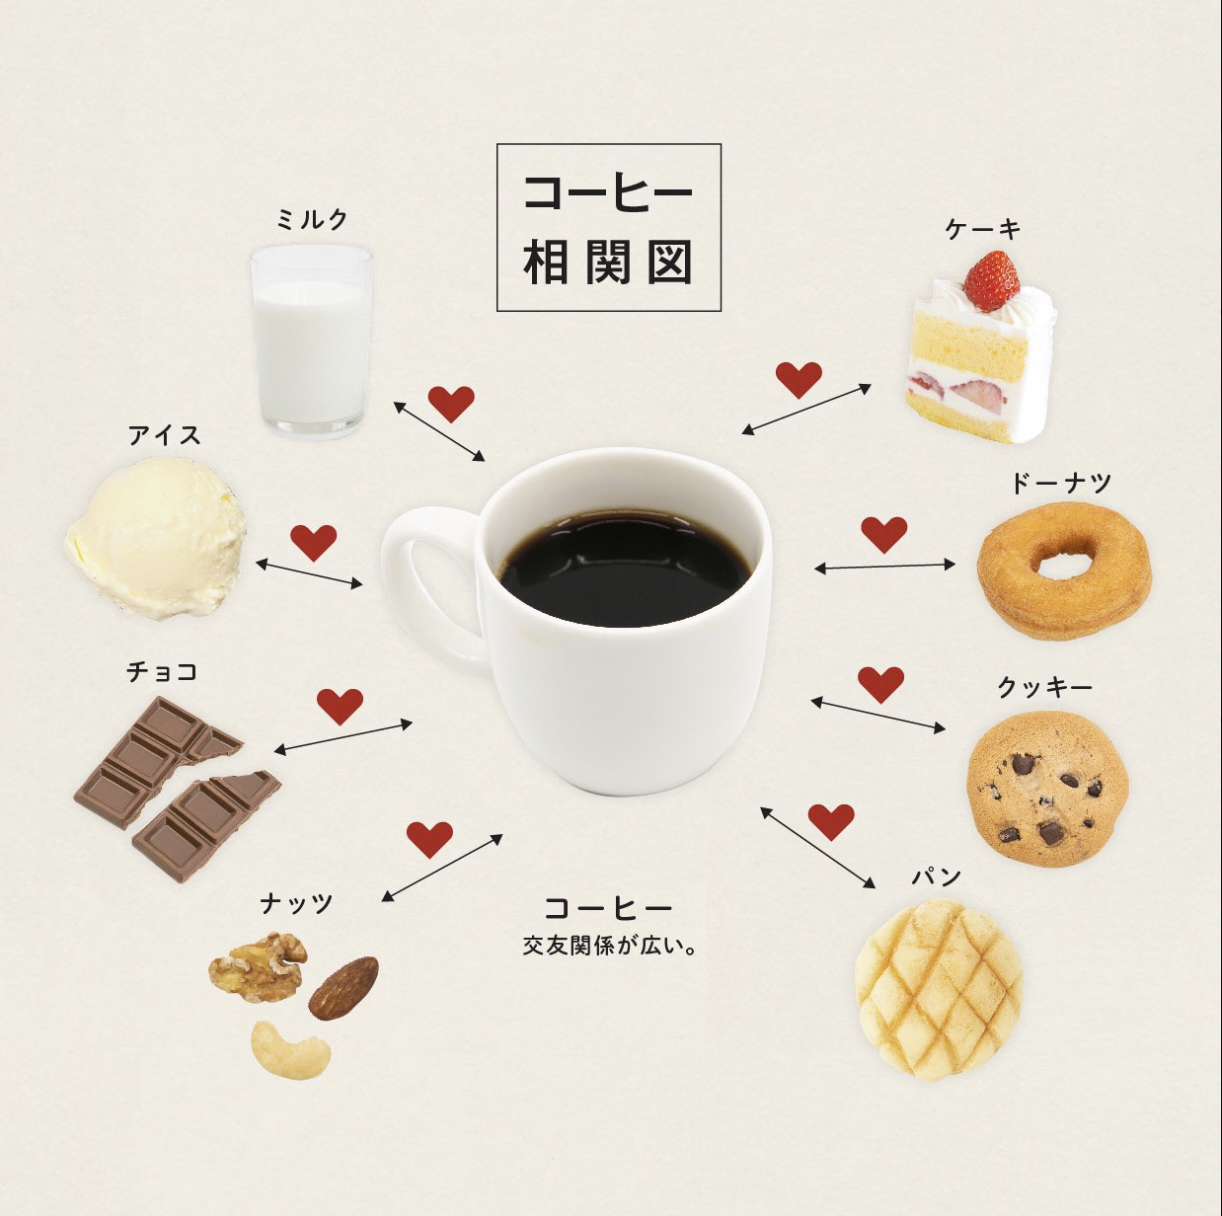 コーヒー相性図。コーヒー中央に、相性の良い飲み物や食べ物がハートマークで結ばれています。